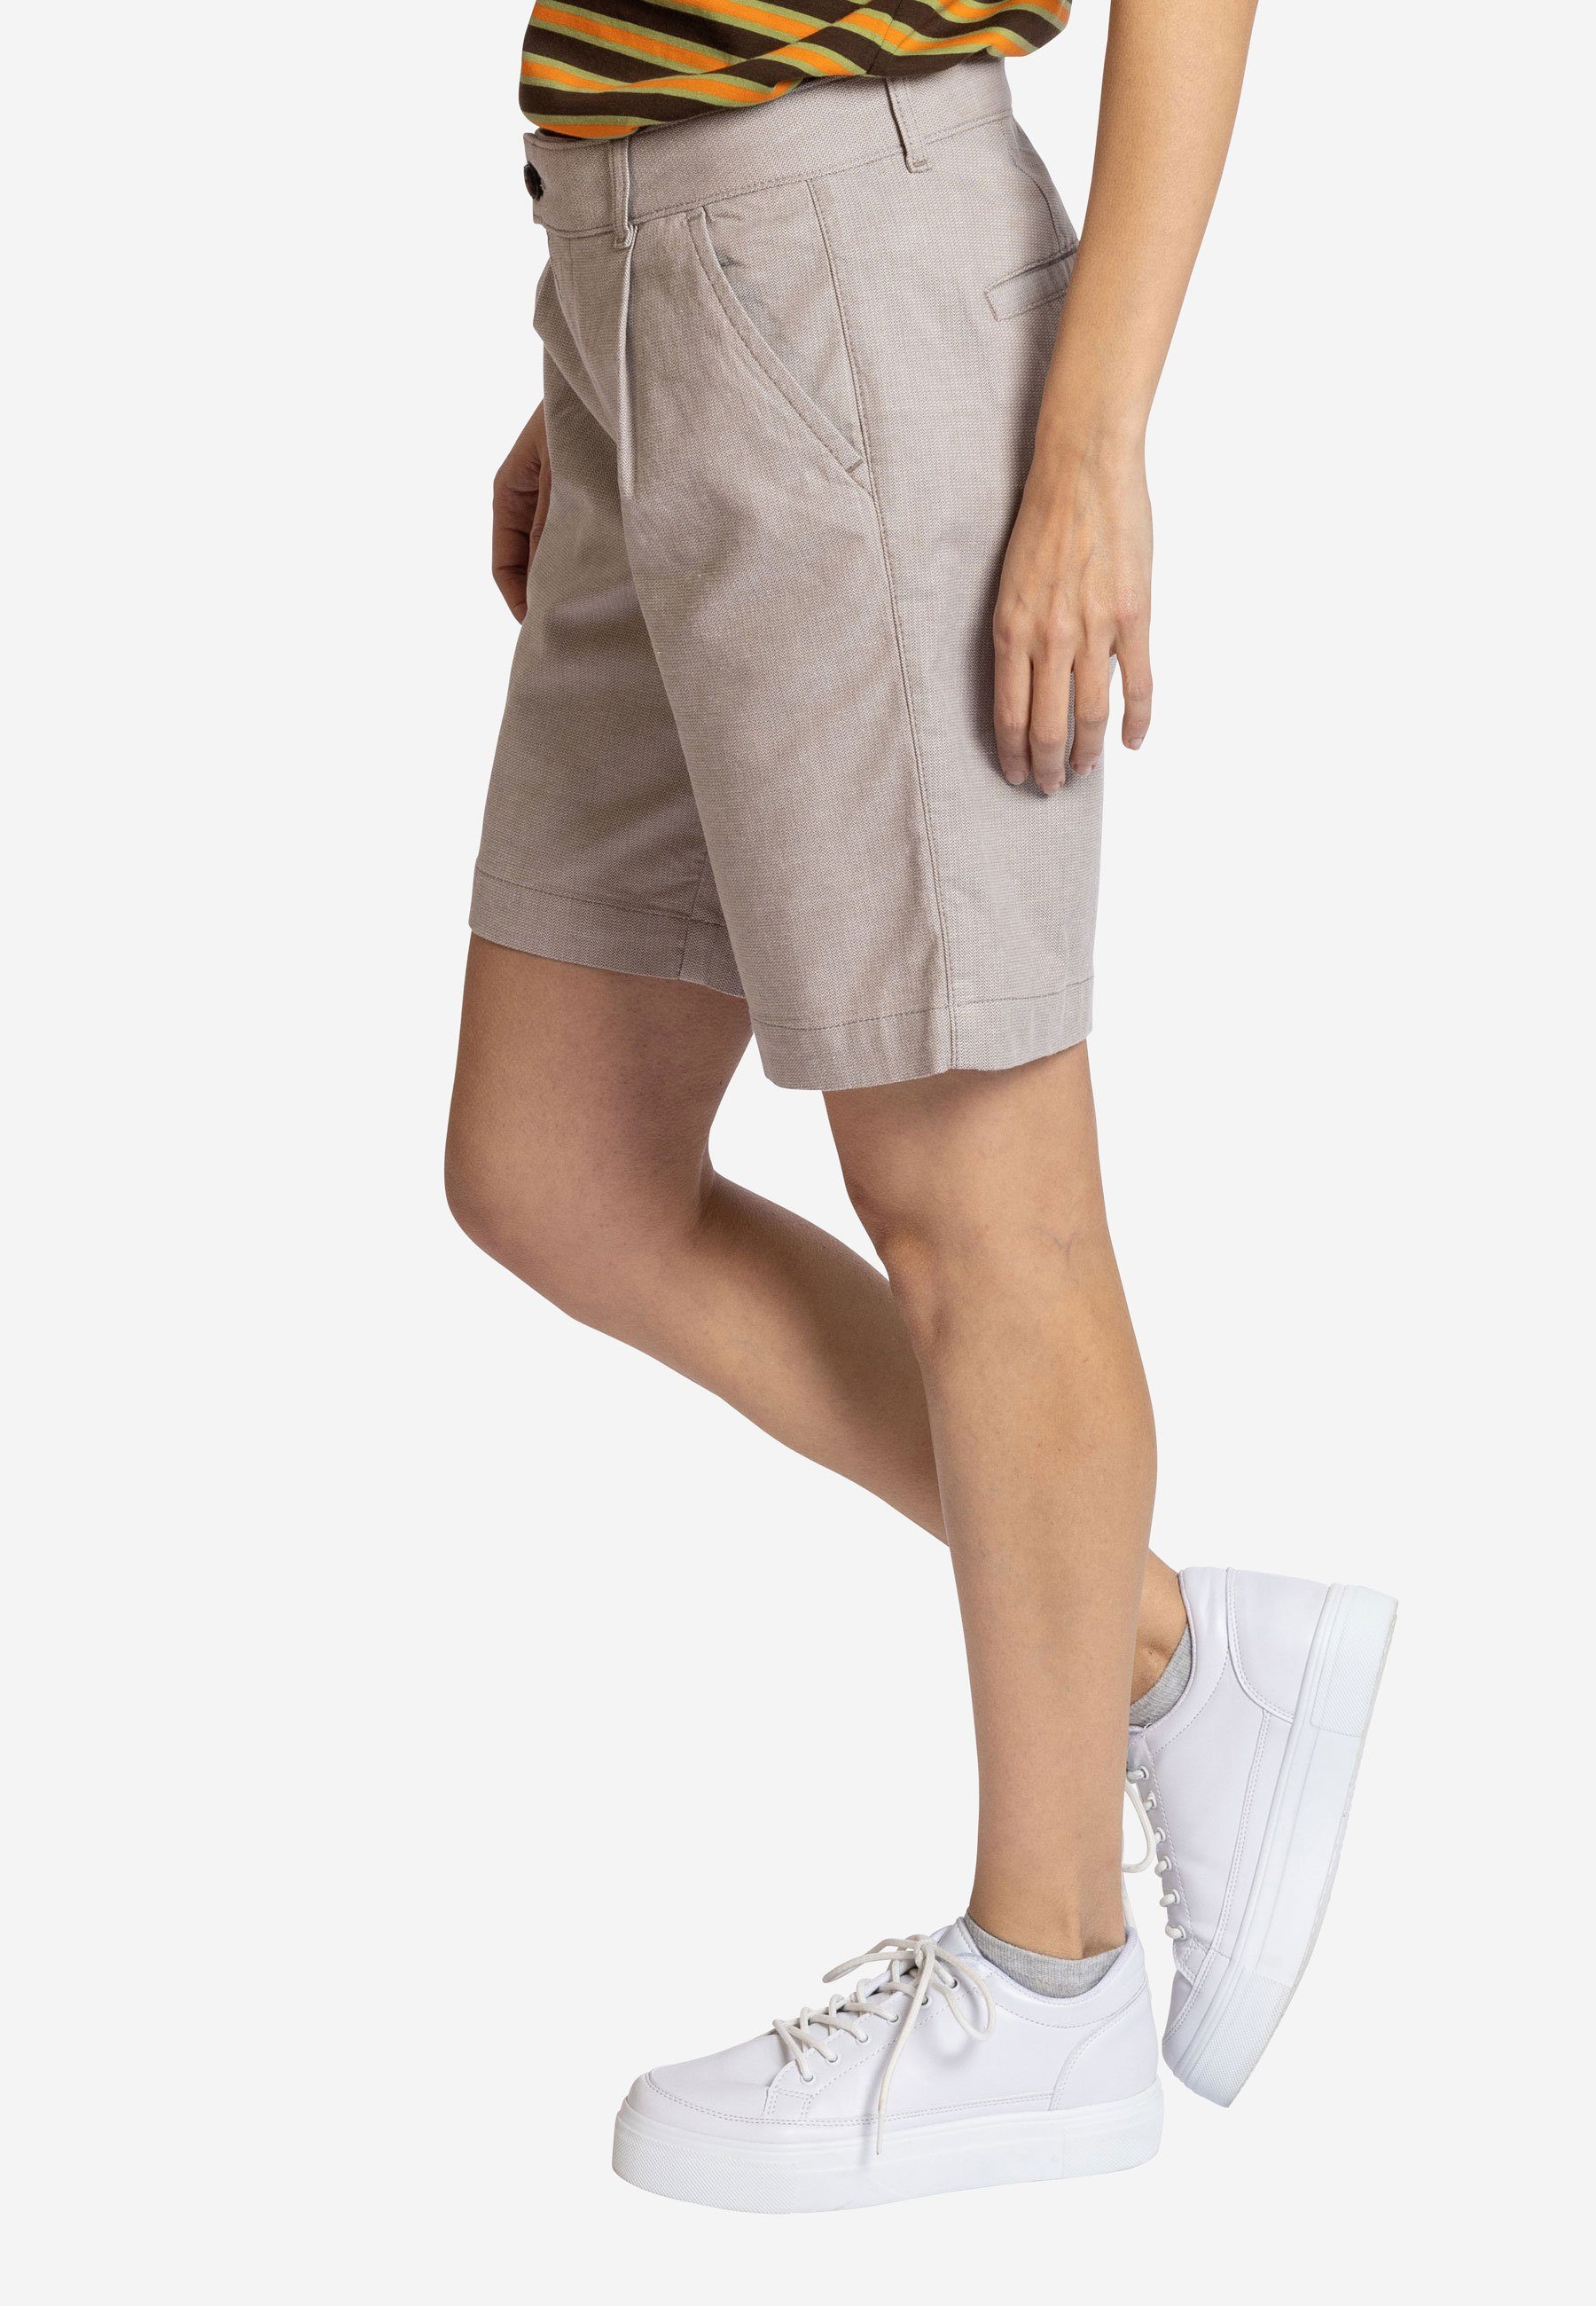 Hose - white Shorts Bermuda Strandshorts Shorty khaki kurze Elkline